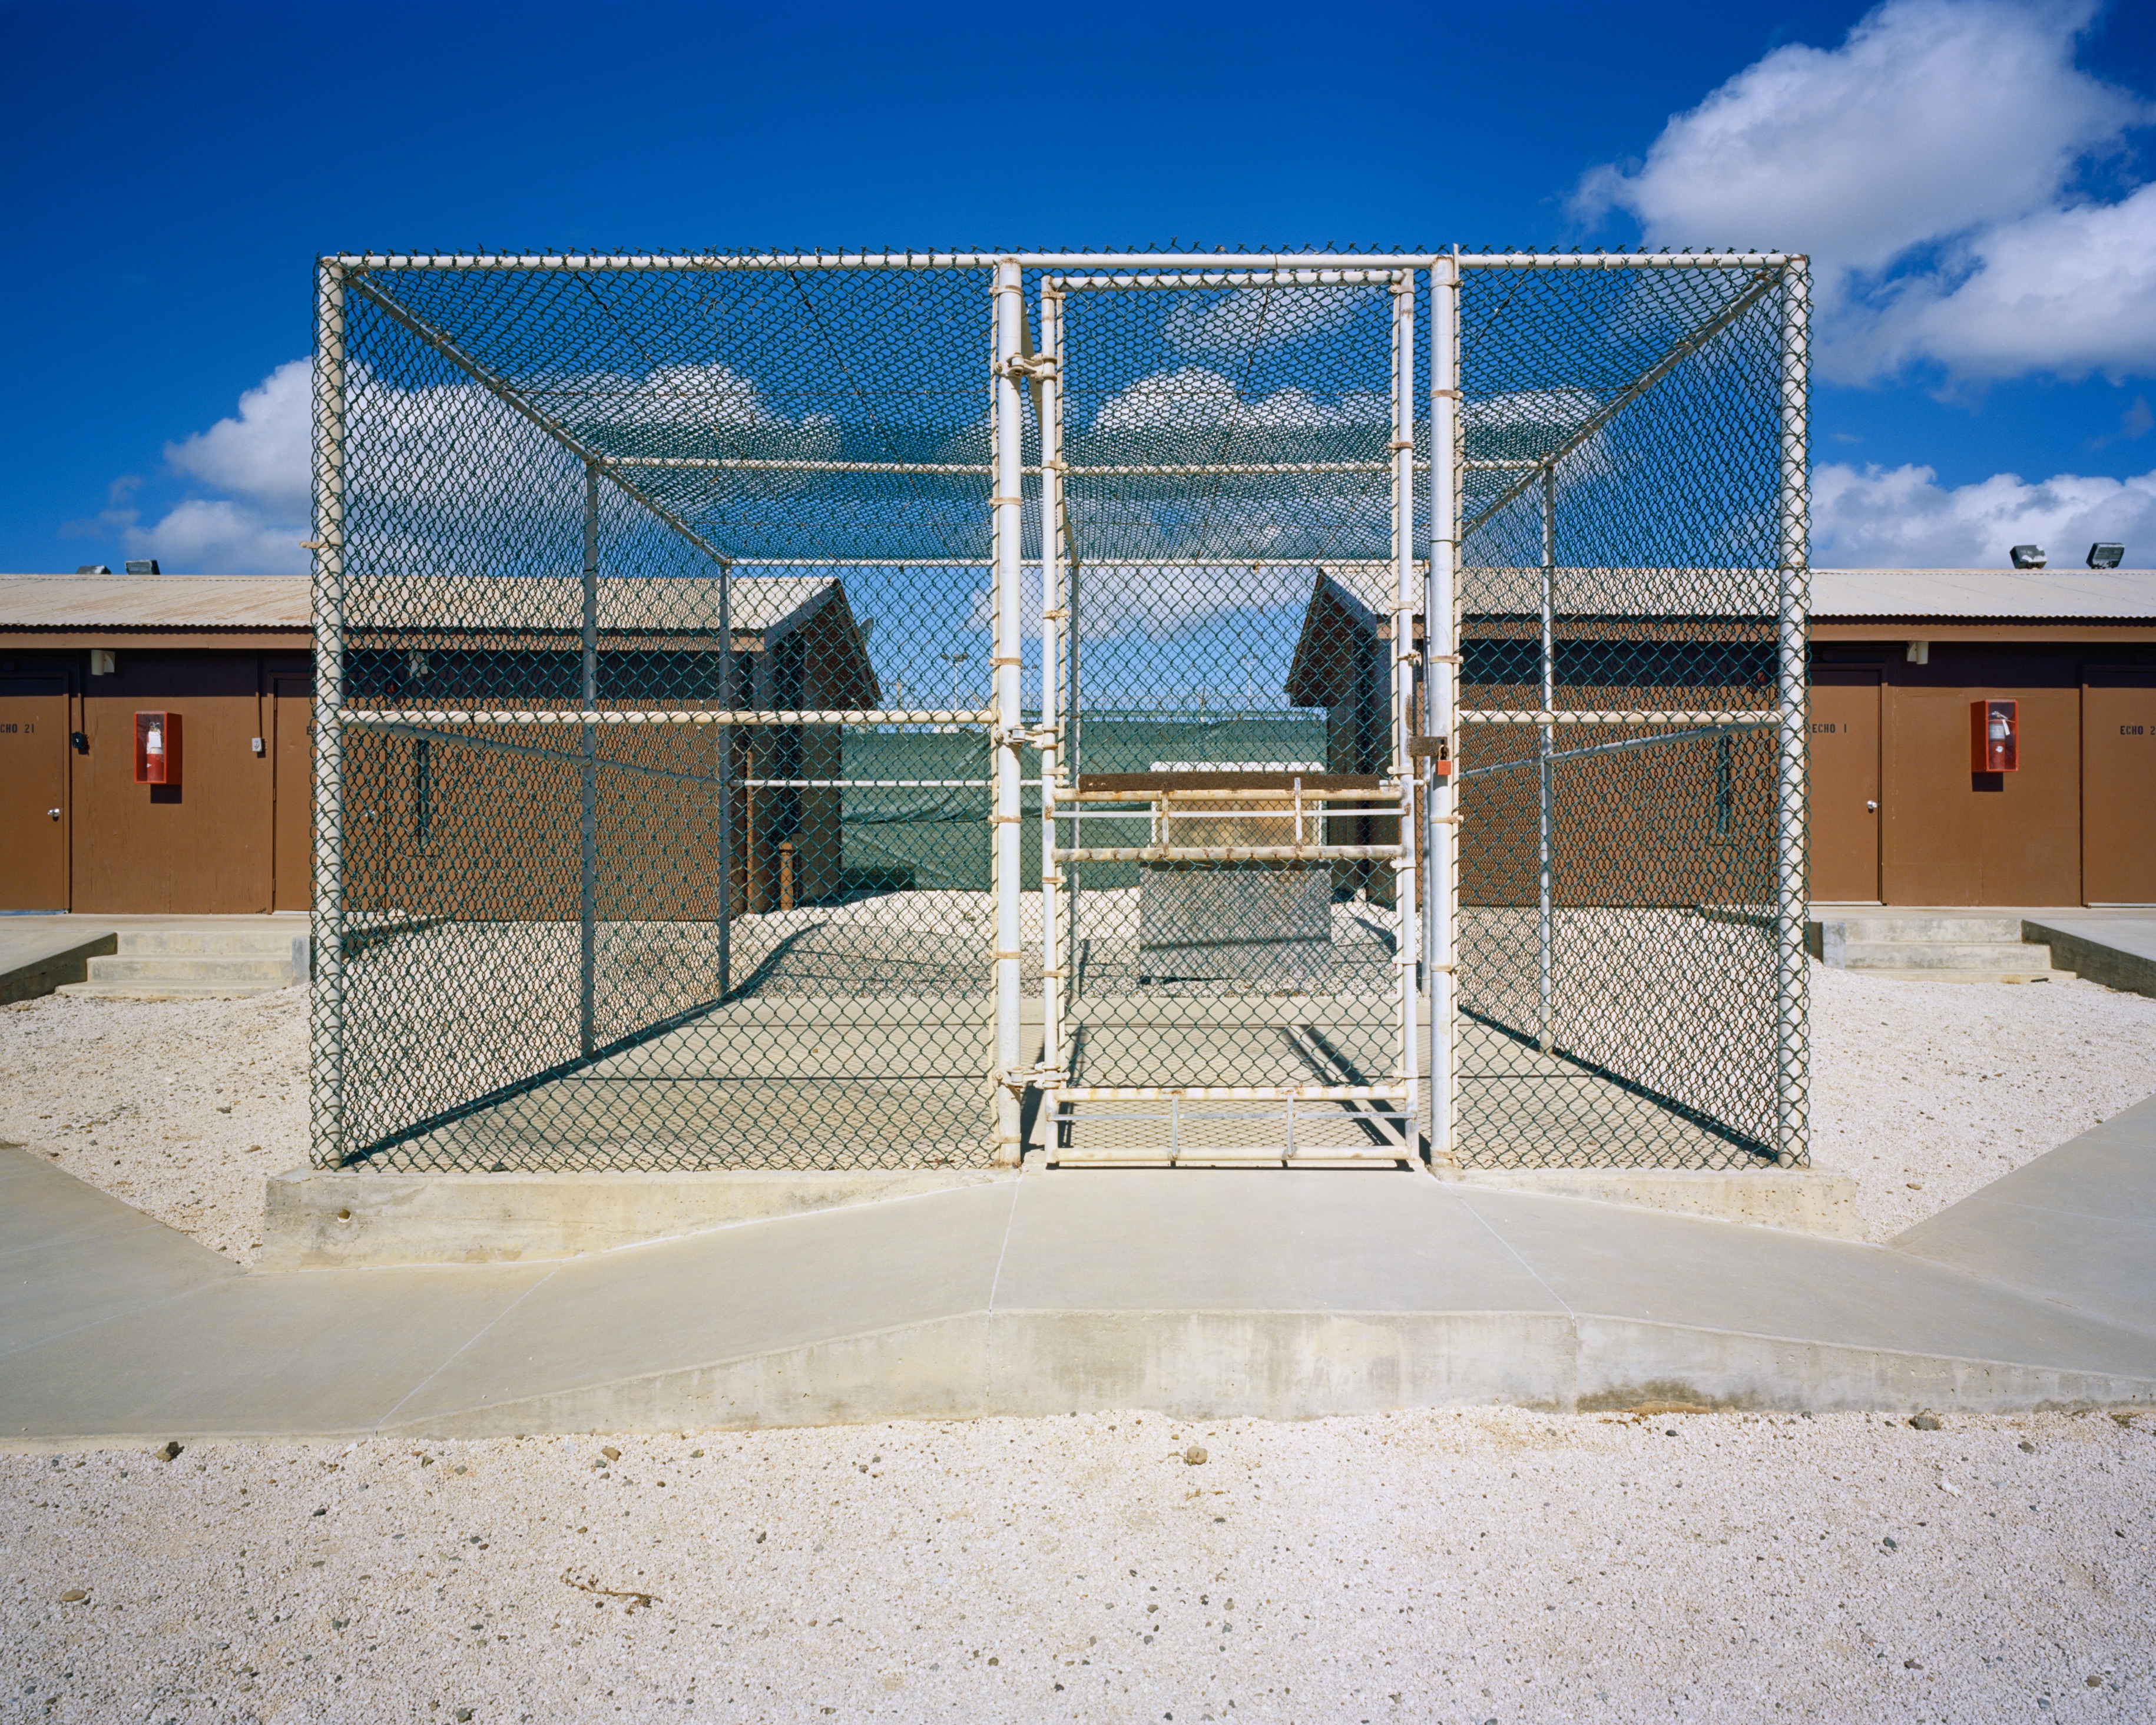 Drahtkäfig und zwei Baracken: Frischluft-Zellen im Camp Echo, Guantánamo Bay. (c) Debi Cornwall